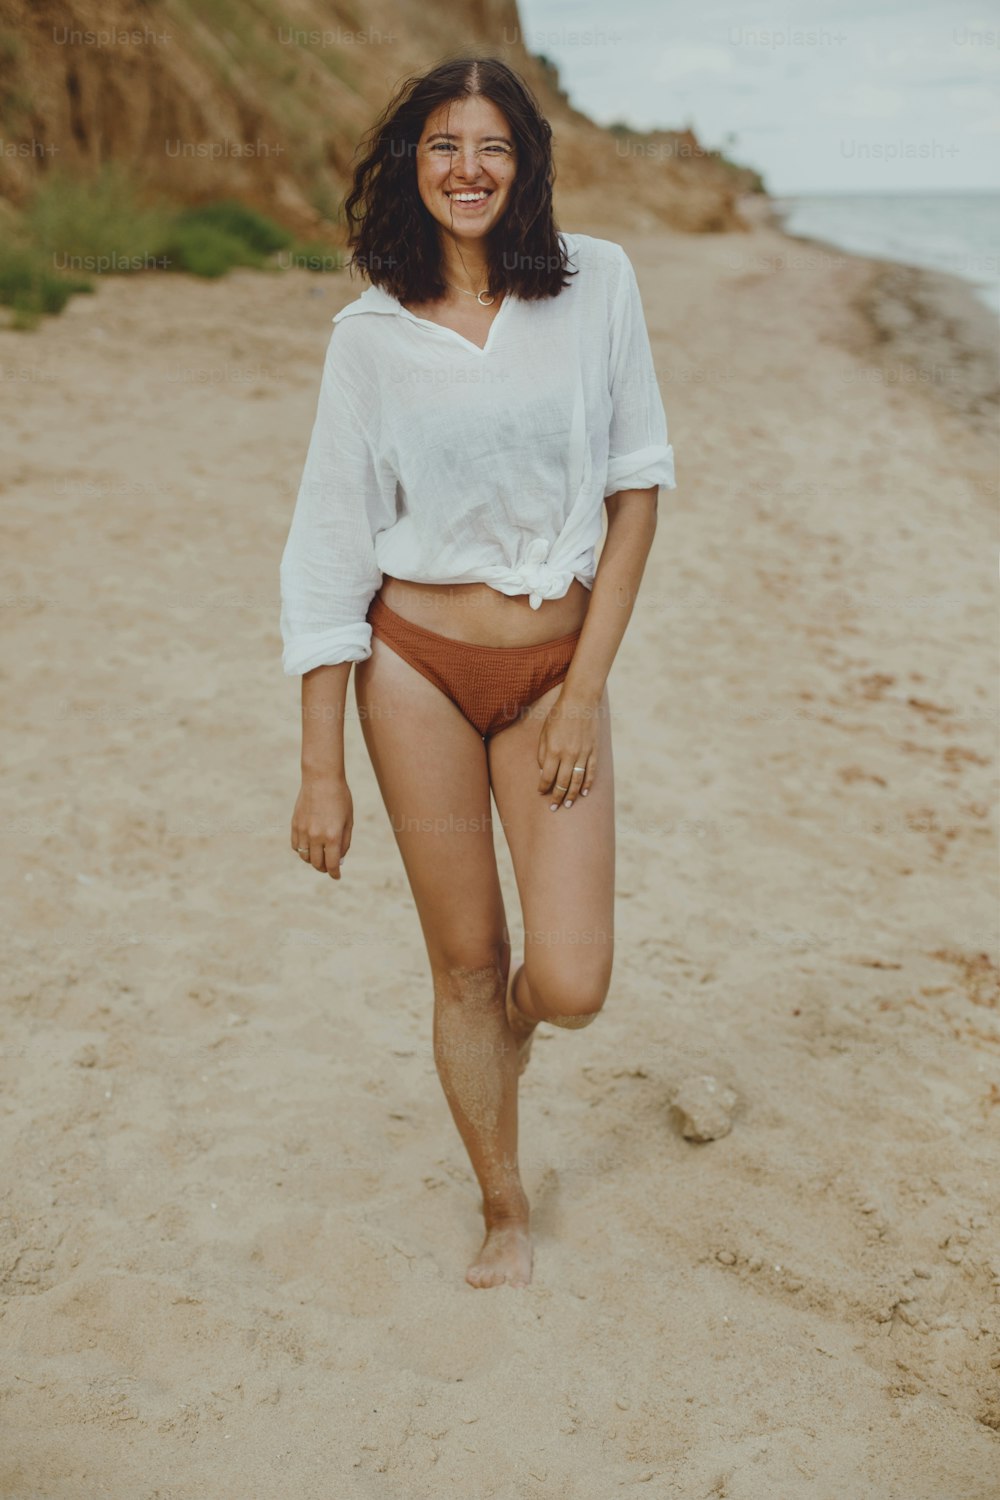 햇볕이 잘 드는 해변에서 흰 셔츠를 입은 행복한 보헤미안 소녀. 수영복과 셔츠를 입고 해변에서 휴식을 취하는 평온한 세련된 여성. 여름 방학. 라이프 스타일 정통 이미지